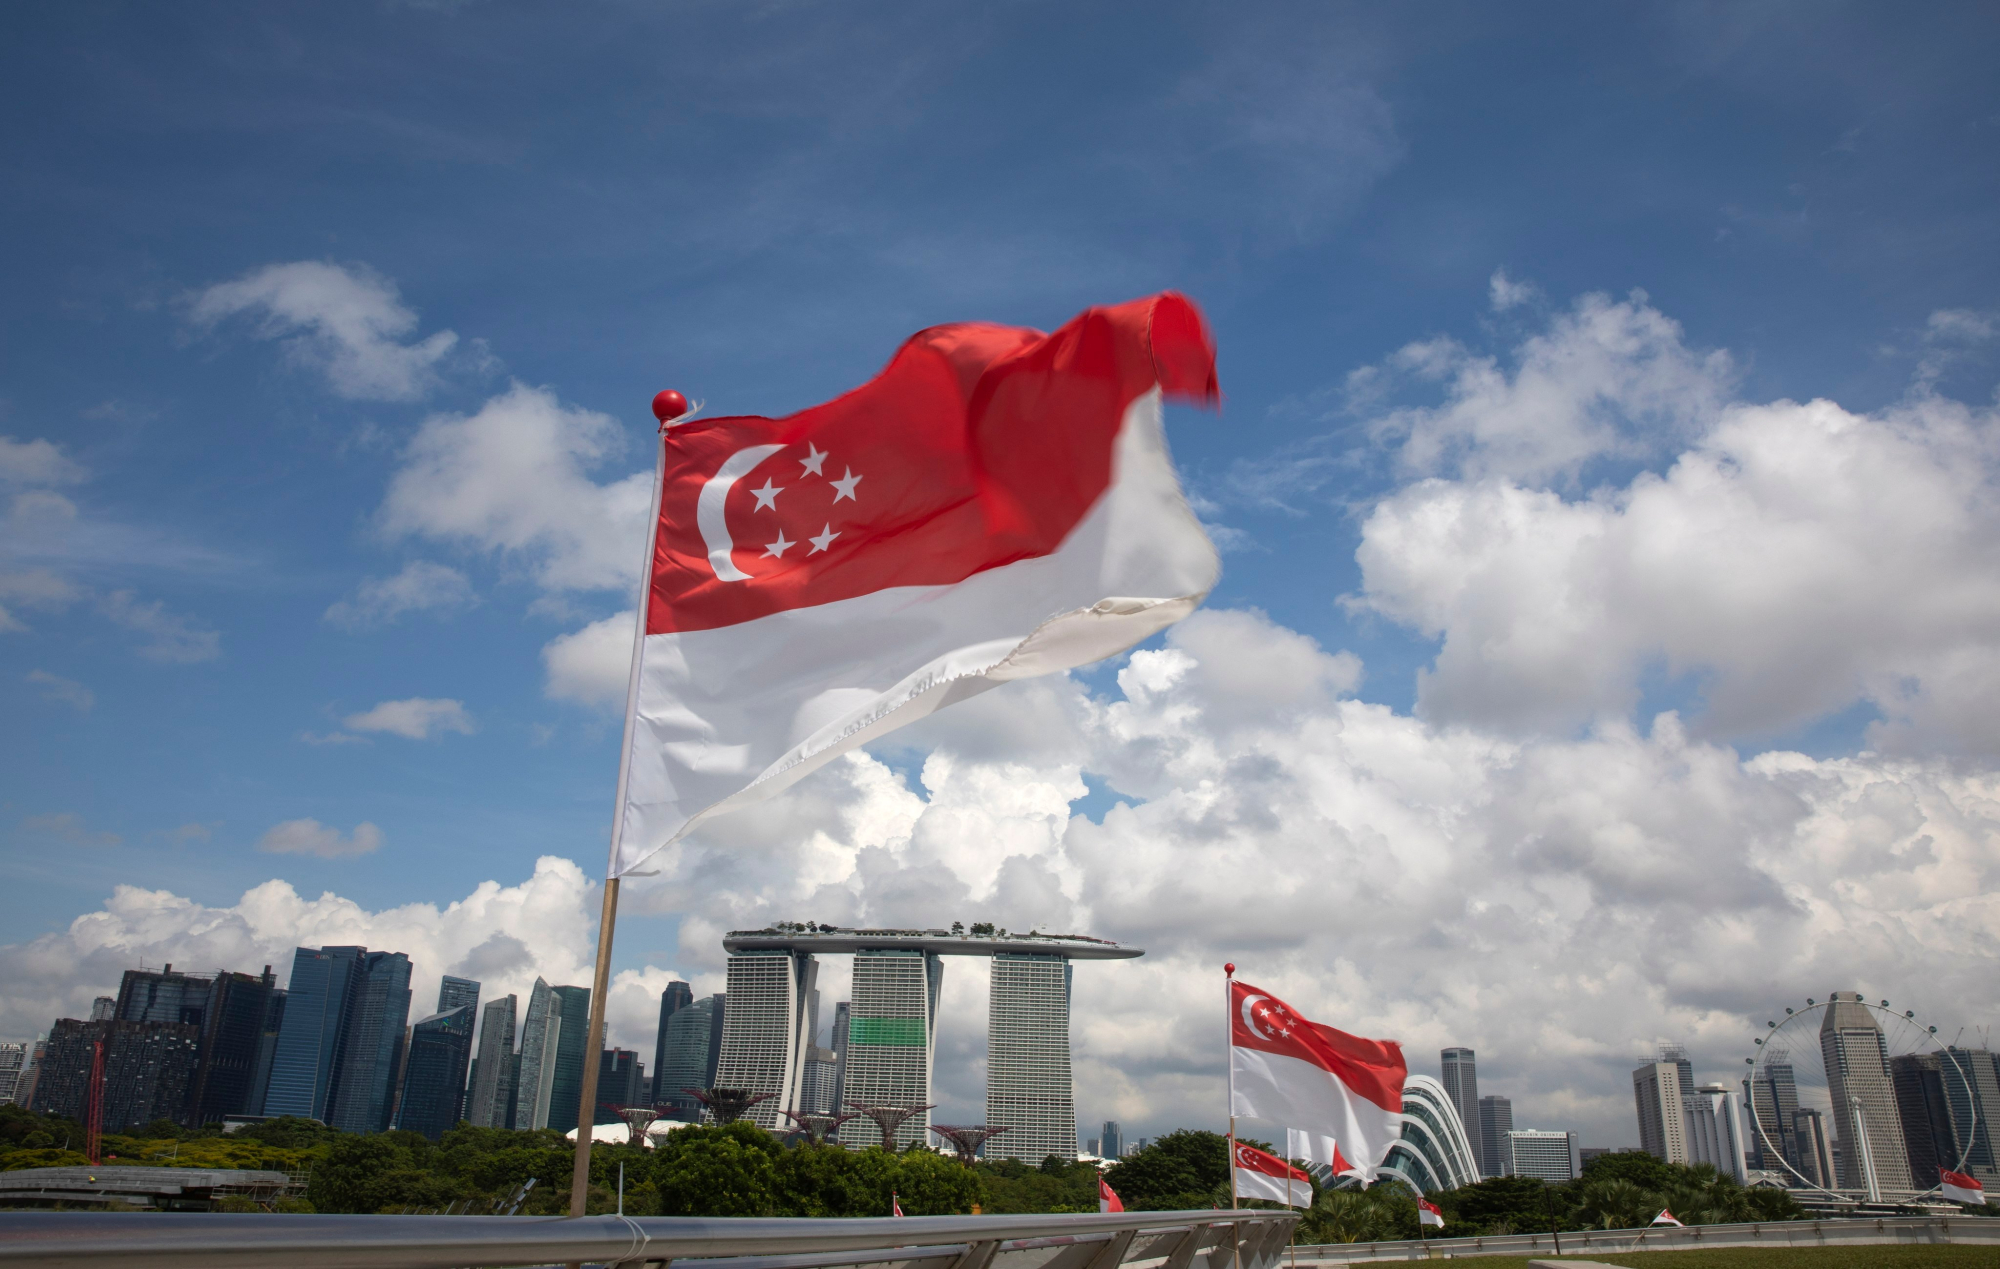 Với sự phát triển bất động sản đáng kinh ngạc, Singapore được xem là một trong những thành phố đáng sống nhất thế giới. Nơi đây có những tòa nhà cao nhất, những khu dân cư xanh và tiện ích hiện đại. Với những hình ảnh bất động sản tuyệt đẹp, bạn sẽ hiểu được tại sao Singapore được coi là một trong những điểm đến hấp dẫn nhất cho những người yêu thích sự tiến bộ và phát triển.